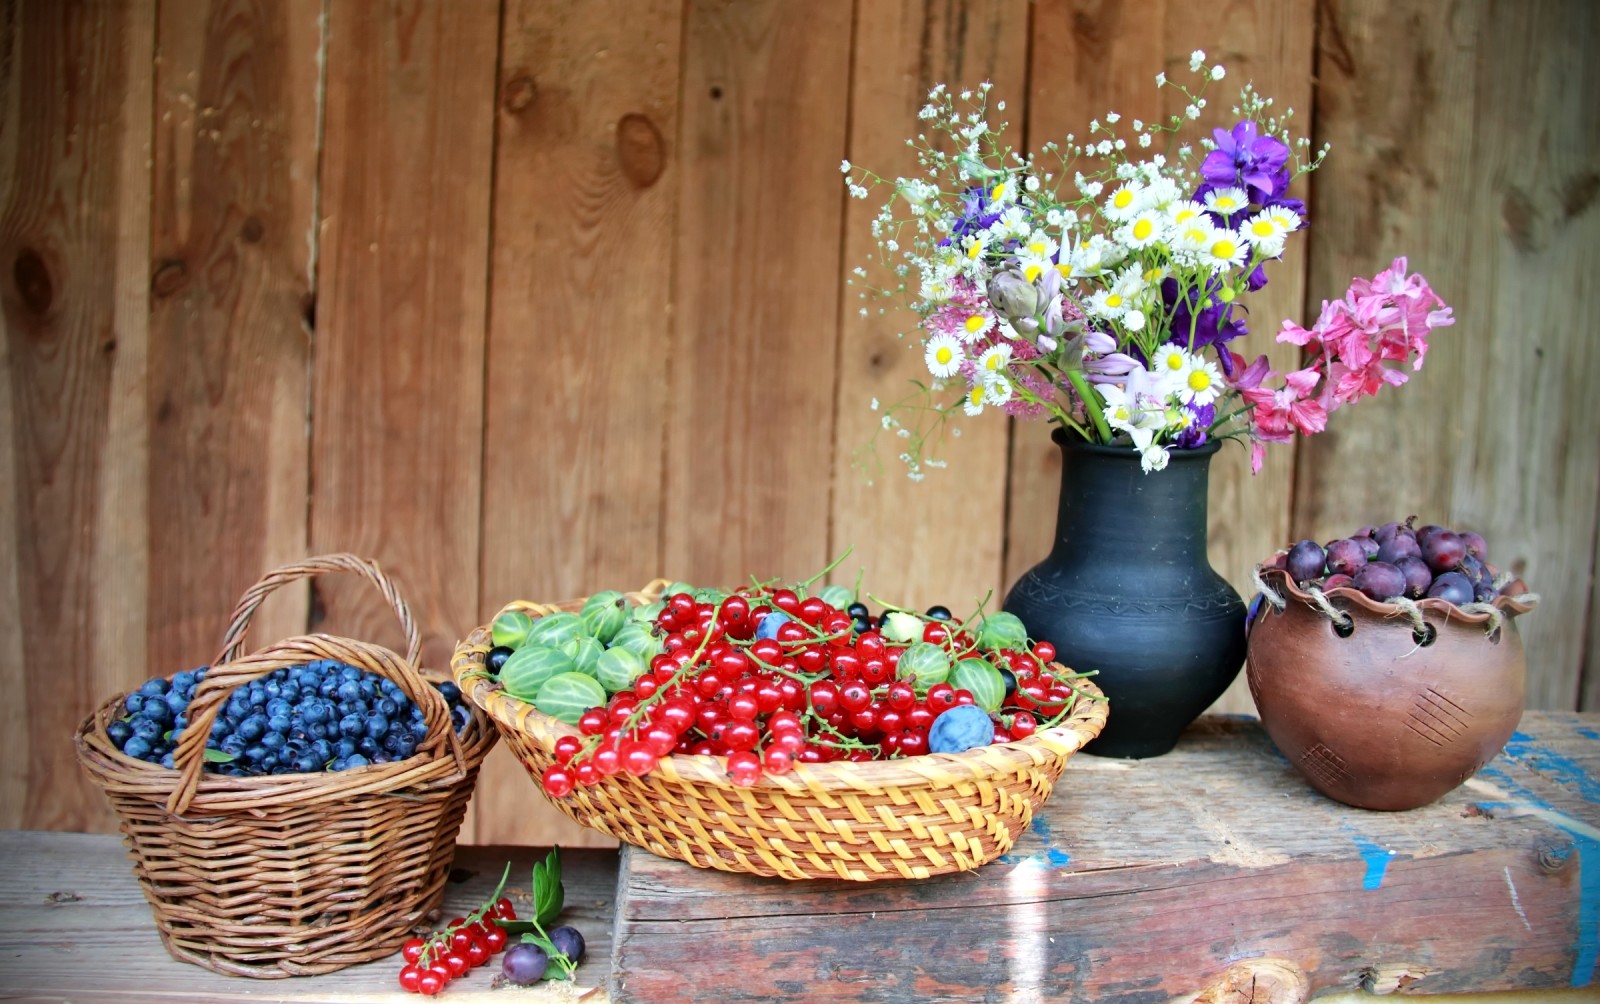 夏季, 静物, 花卉, 浆果, 蓝莓, 黑加仑, 醋栗